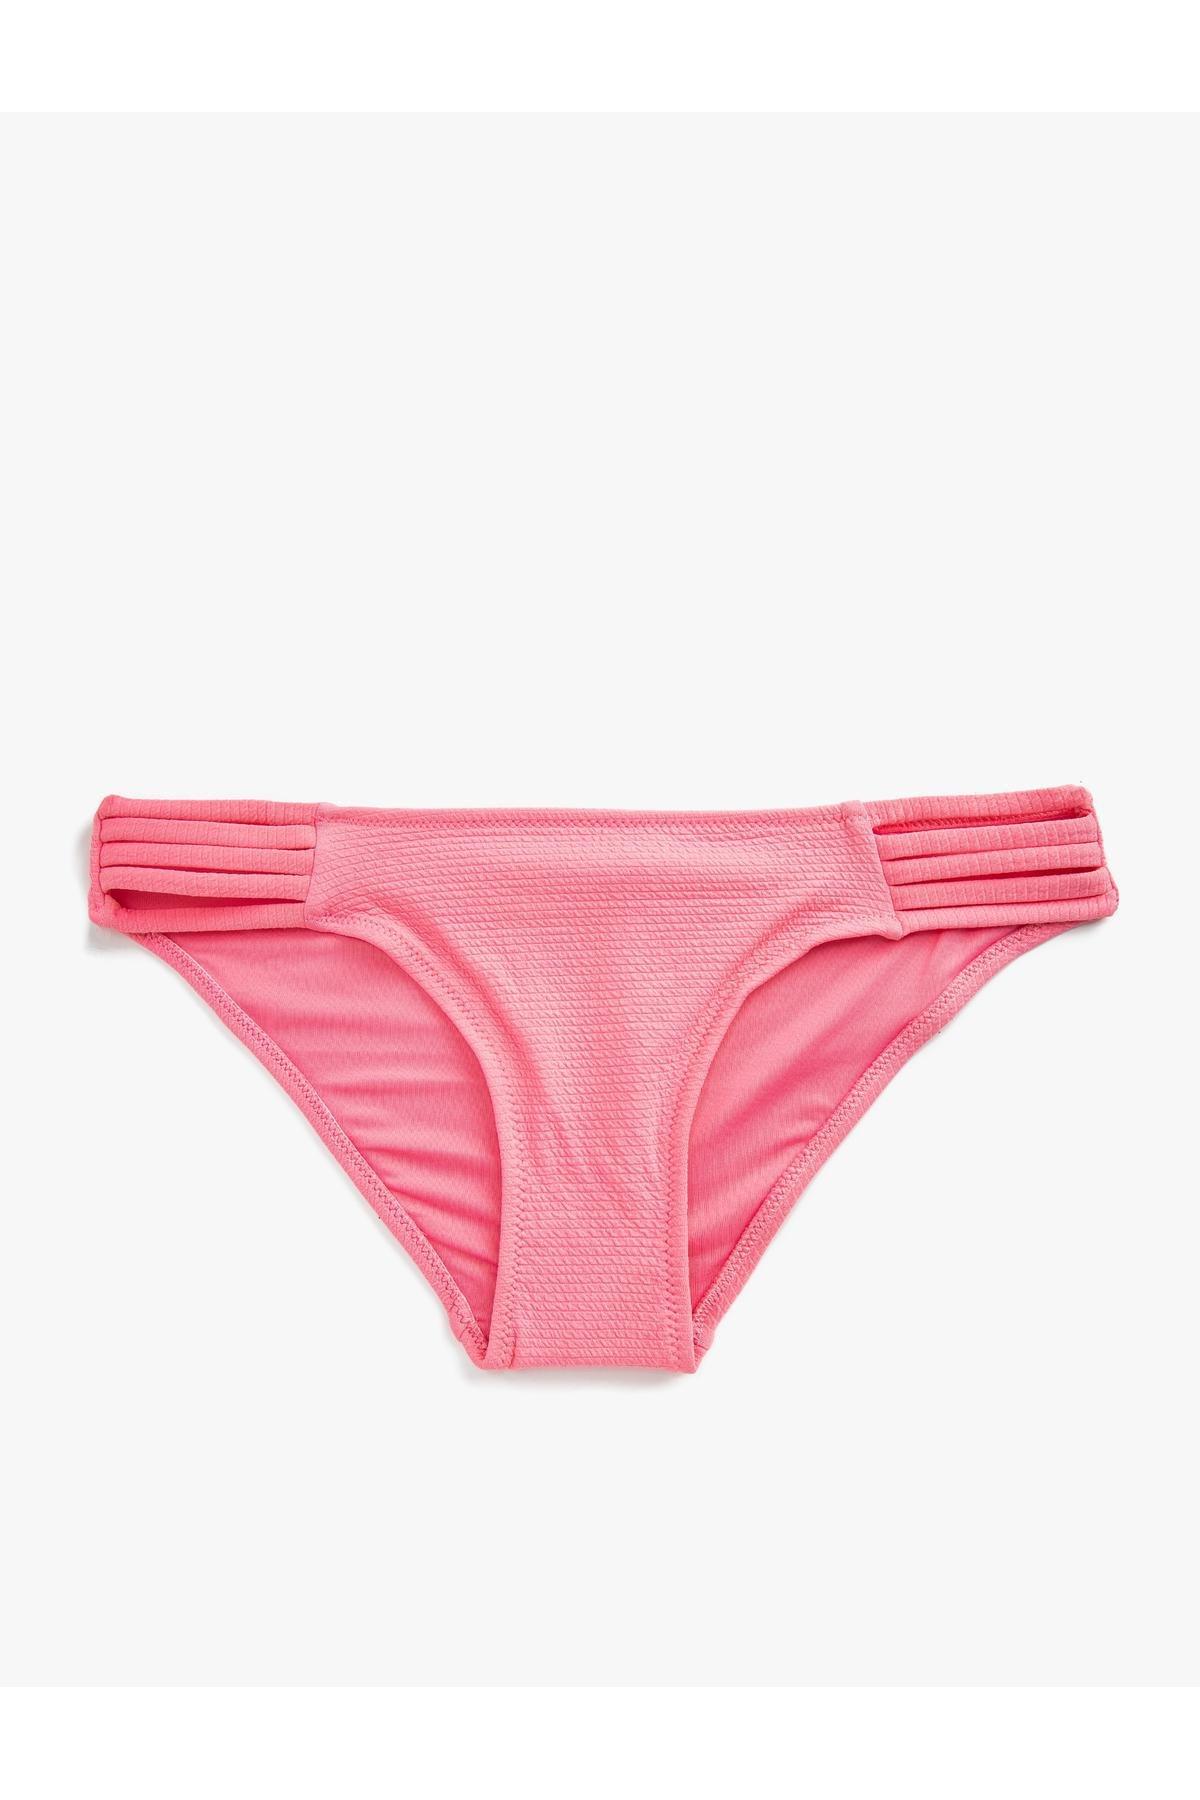 Koton - Pink Piping Detail Bikini Bottom